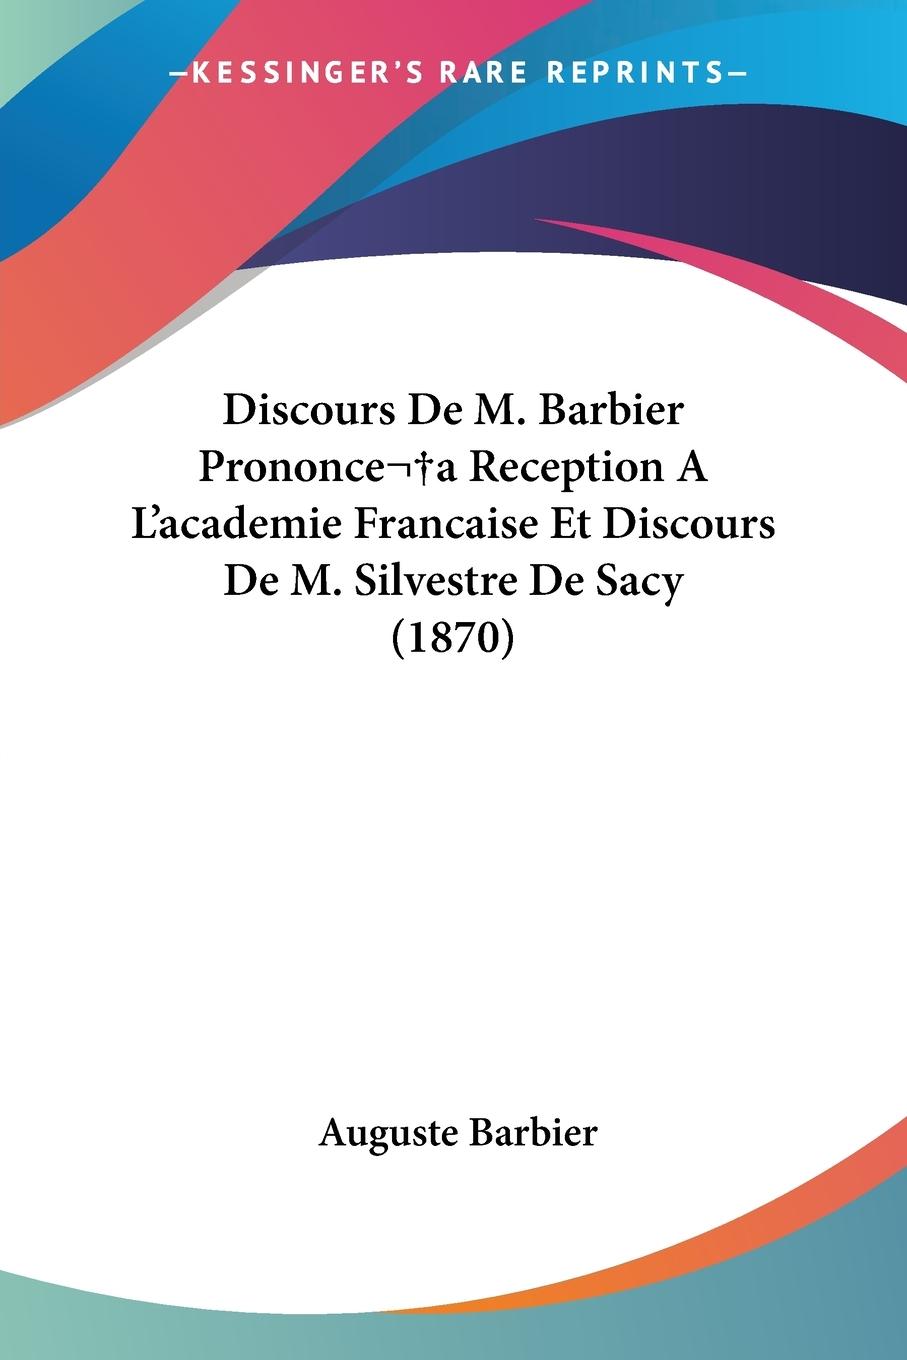 Discours De M. Barbier Prononcea Reception A L academie Francaise Et Discours De M. Silvestre De Sacy (1870) - Barbier, Auguste